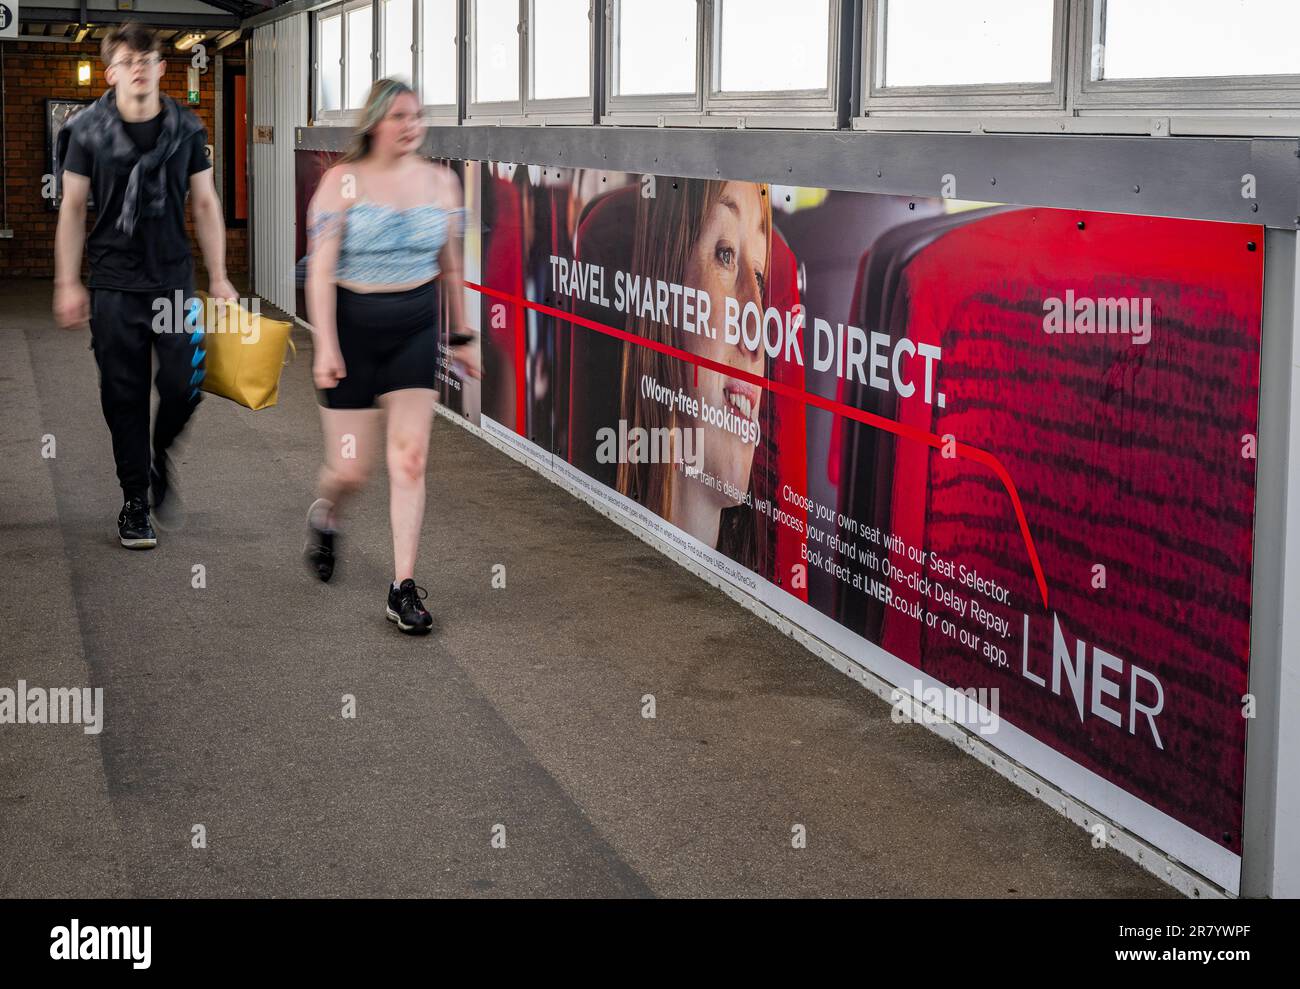 Una giovane coppia che passa davanti a una pubblicità accaparrarsi per London North Eastern Railway (LNER) per viaggi più intelligenti e prenotare direttamente Foto Stock